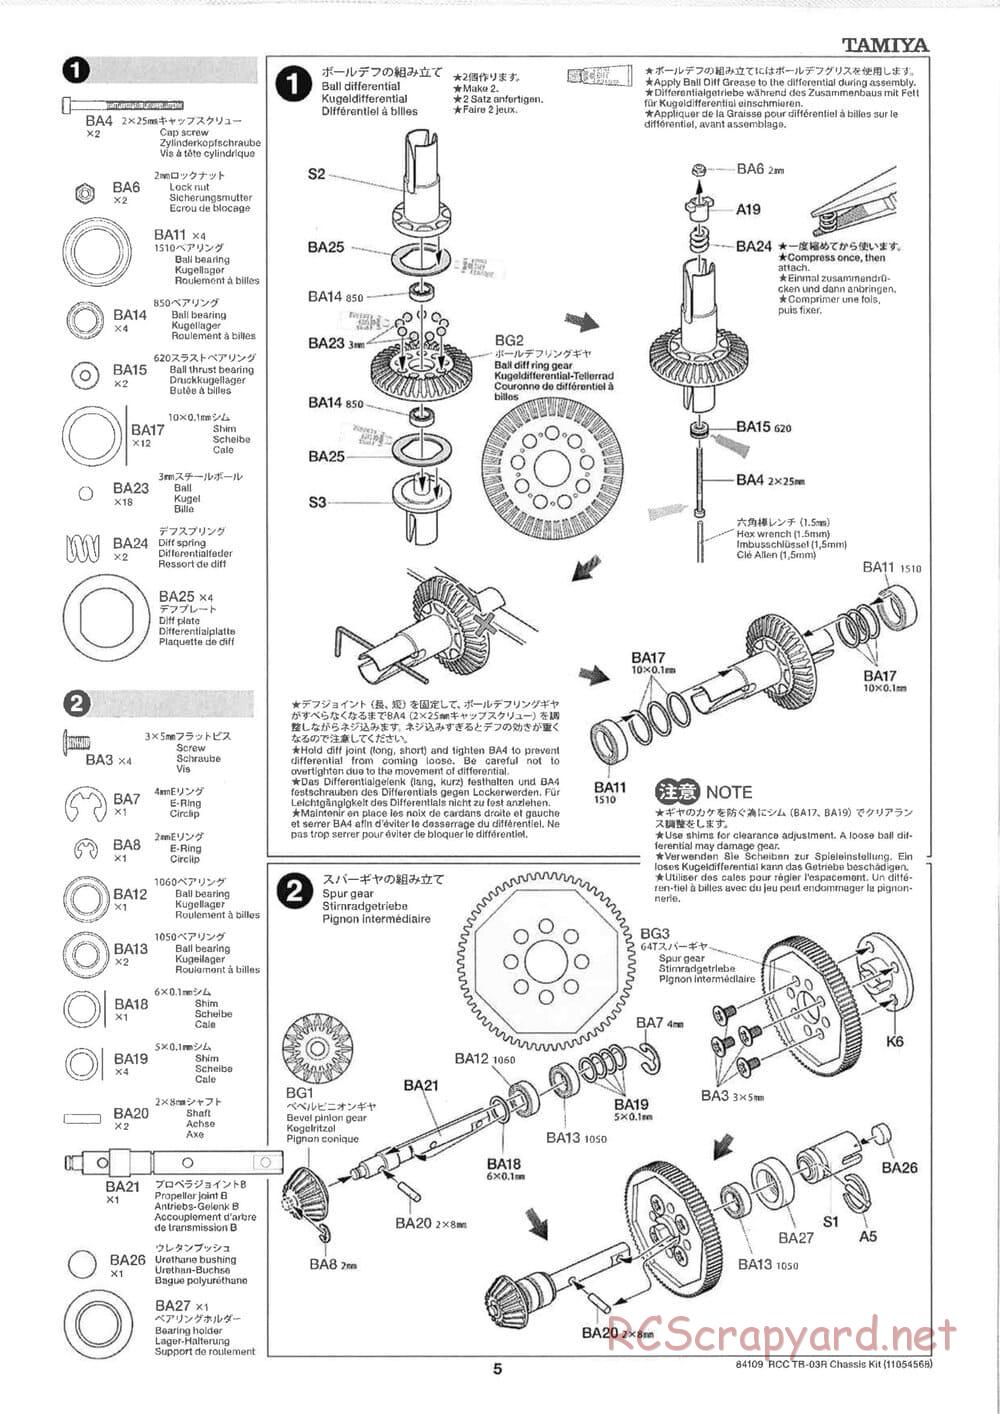 Tamiya - TB-03R Chassis - Manual - Page 5